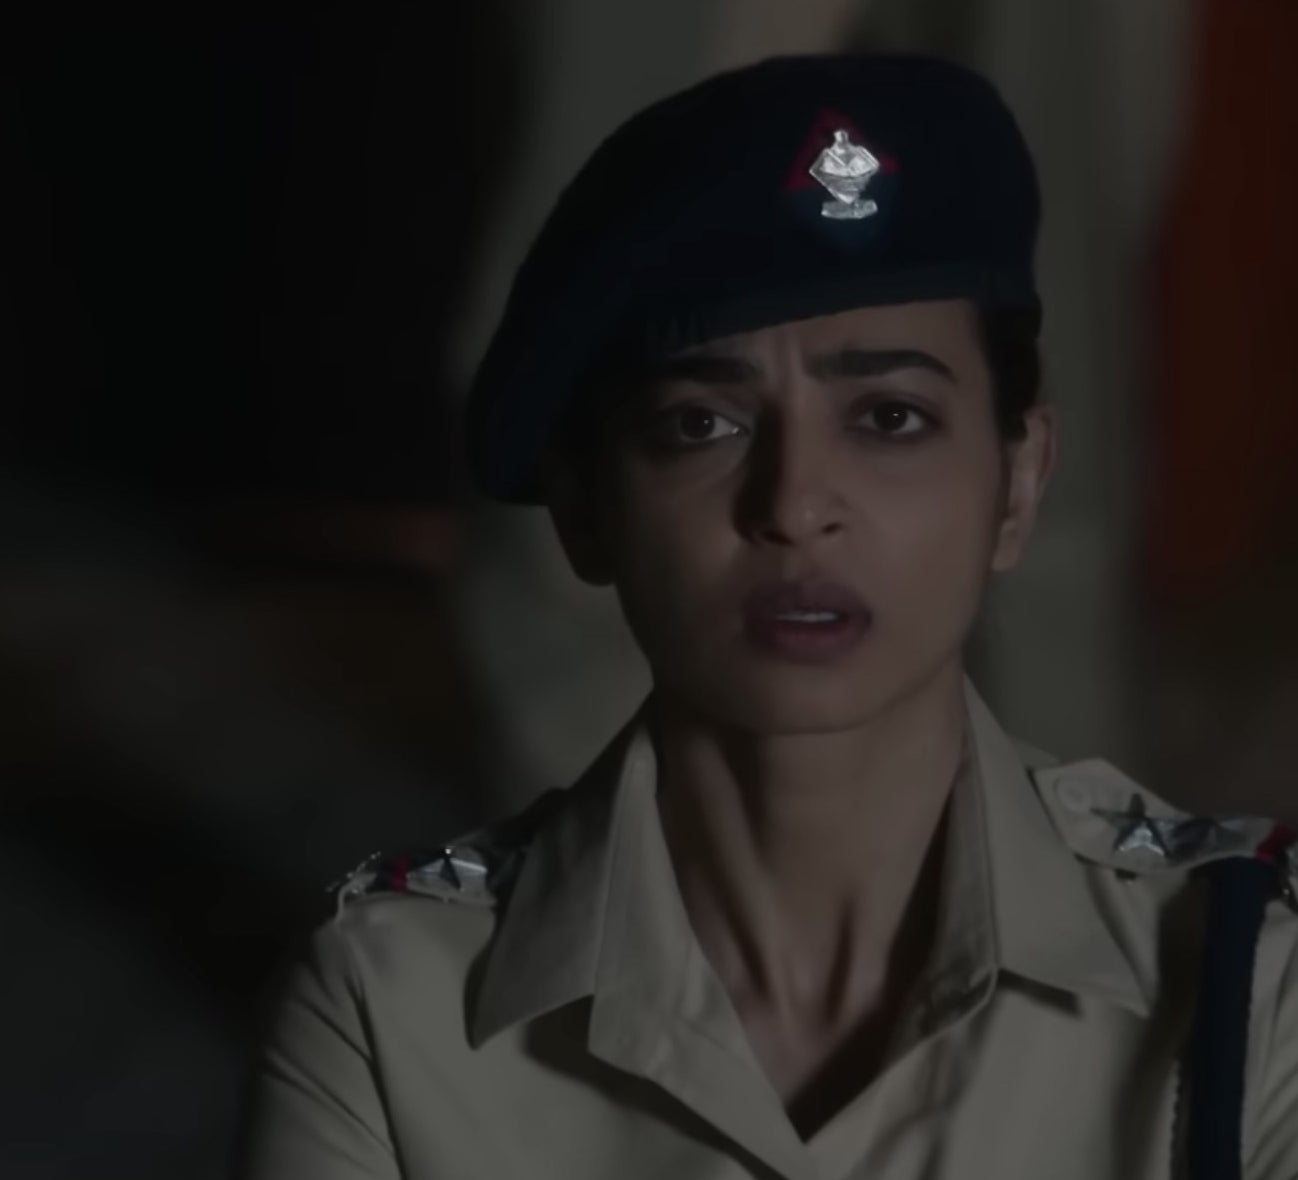 Radhika Apte as a police officer